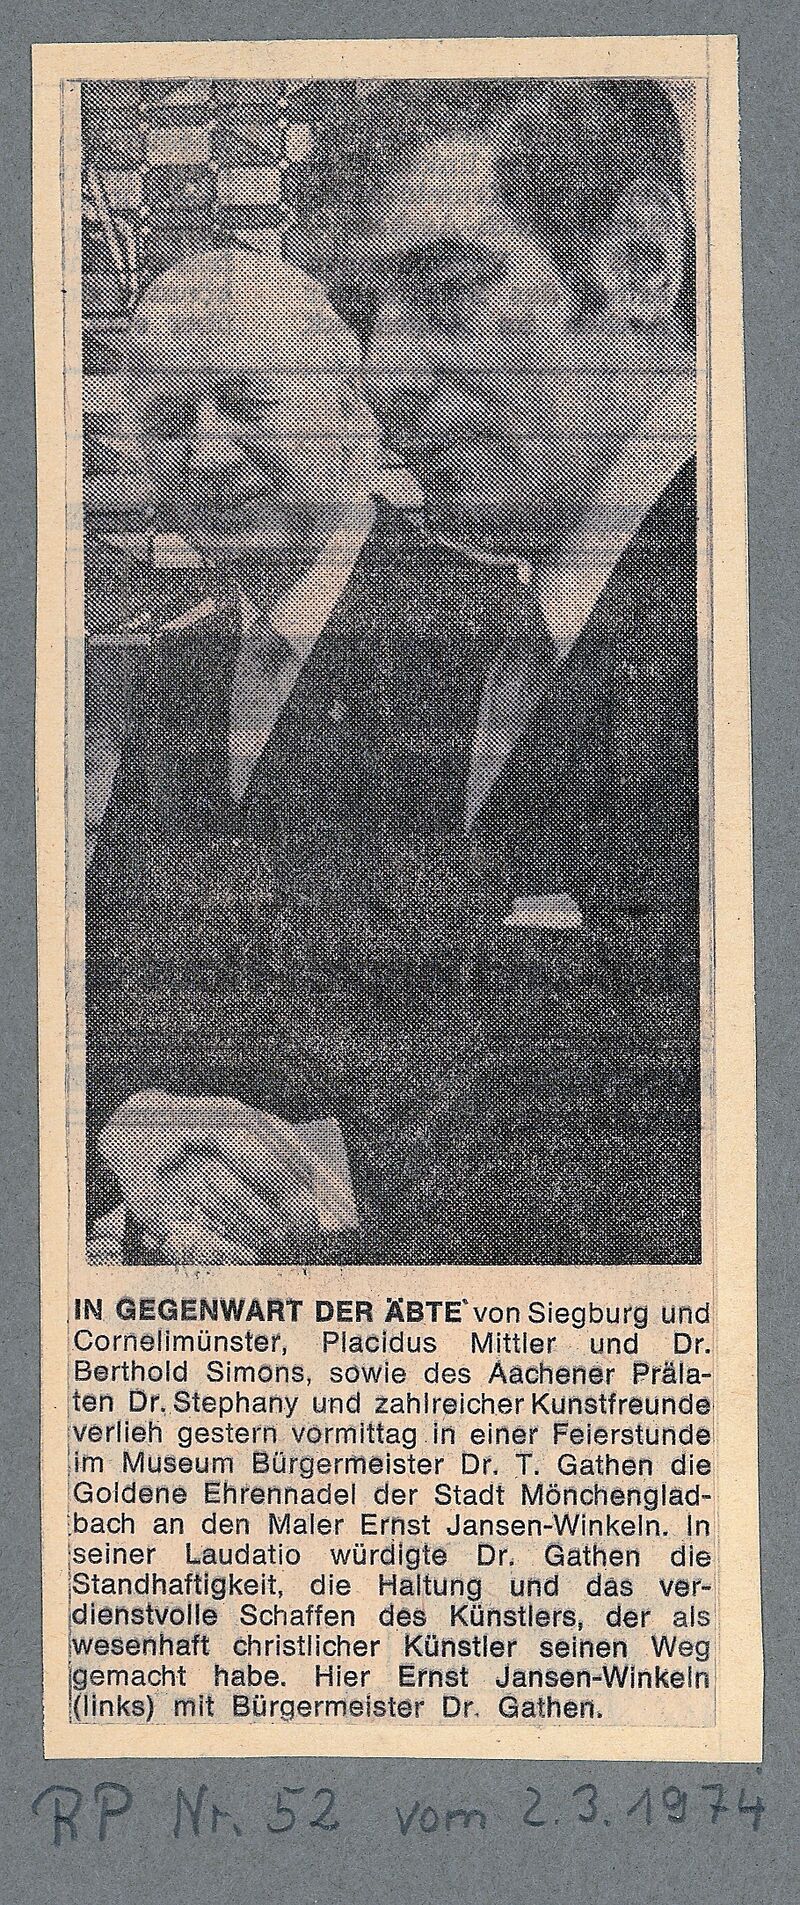 Rheinische Post, 2.3.1974